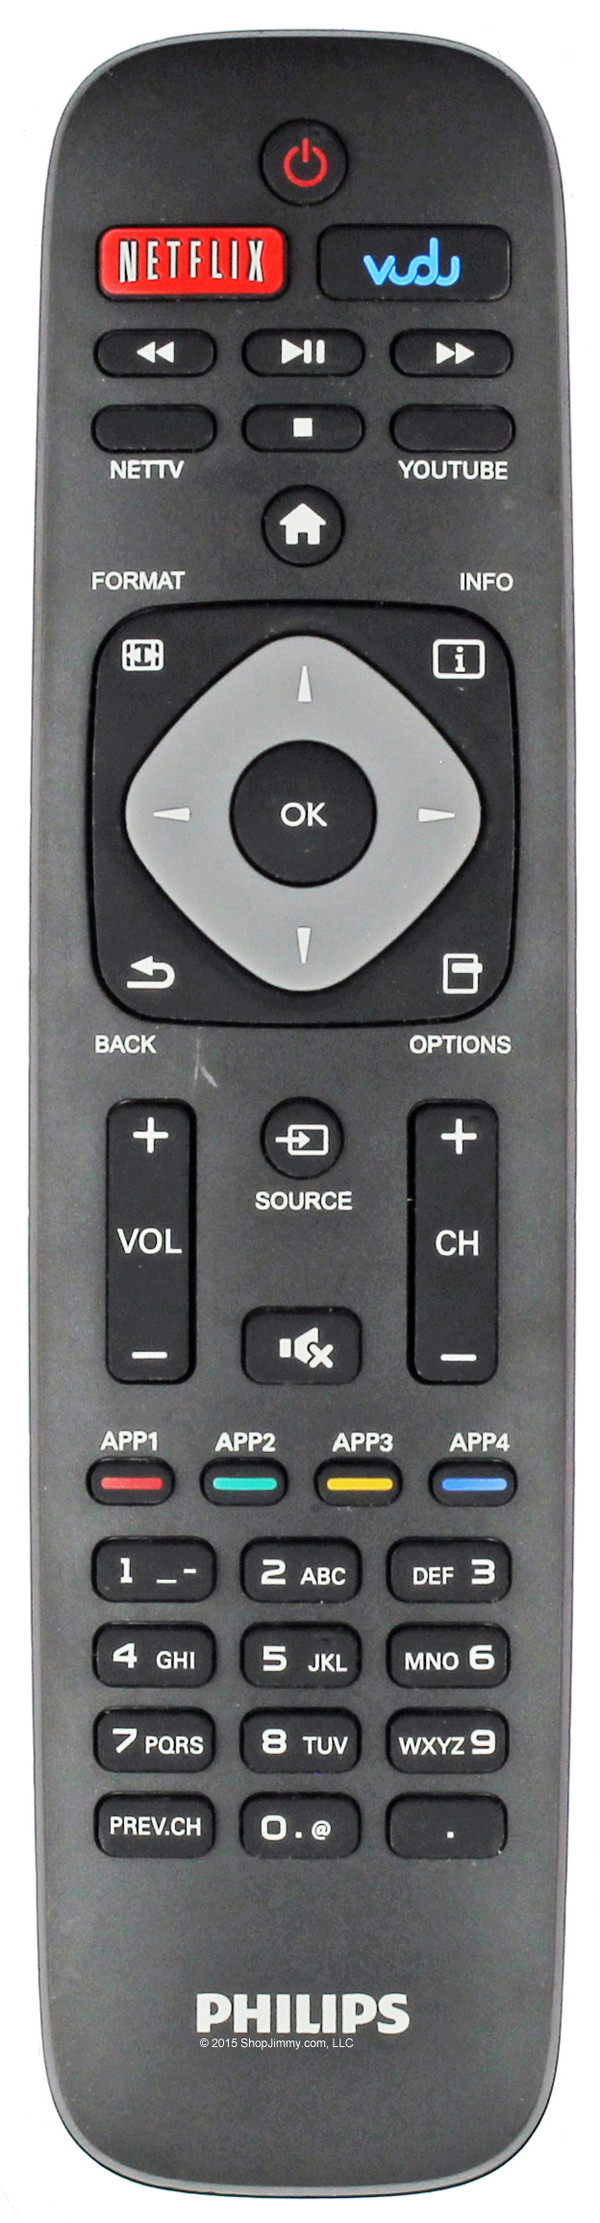 Philips Remote Control Version 1